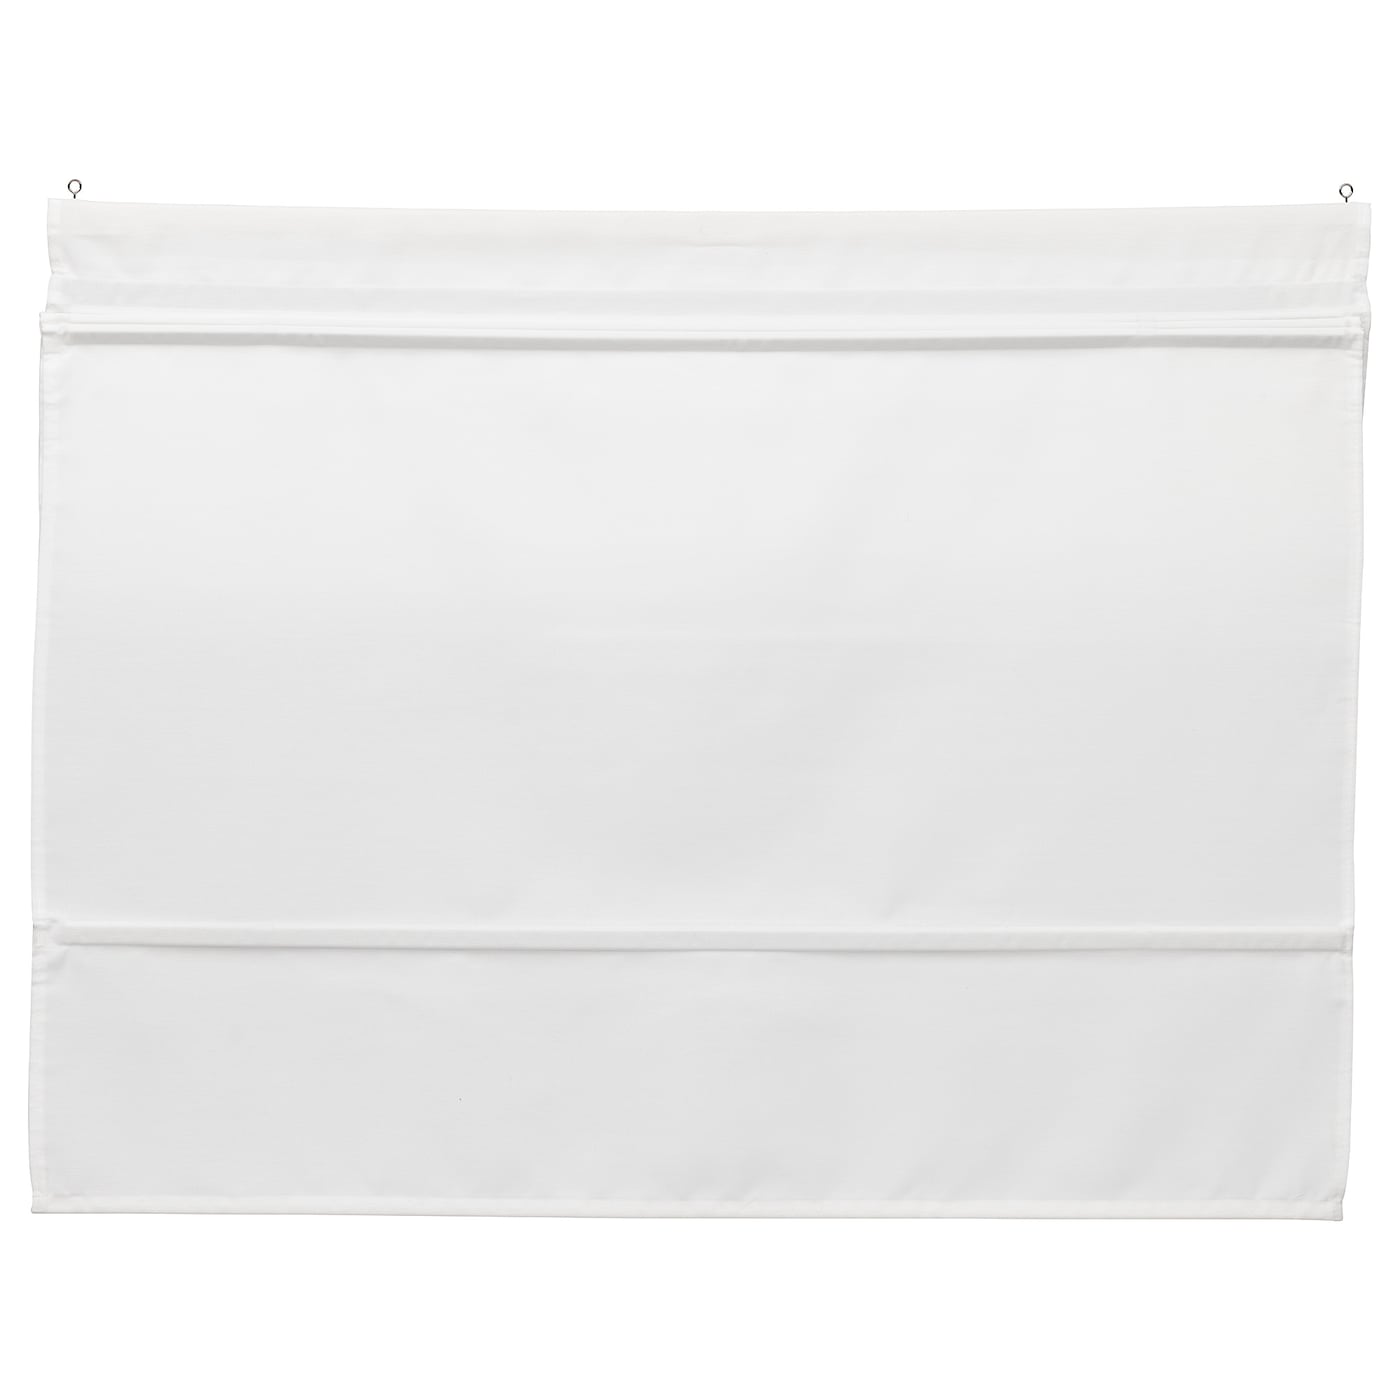 Римская штора - IKEA RINGBLOMMA, 160х100 см, белый, РИНГБЛУММА ИКЕА